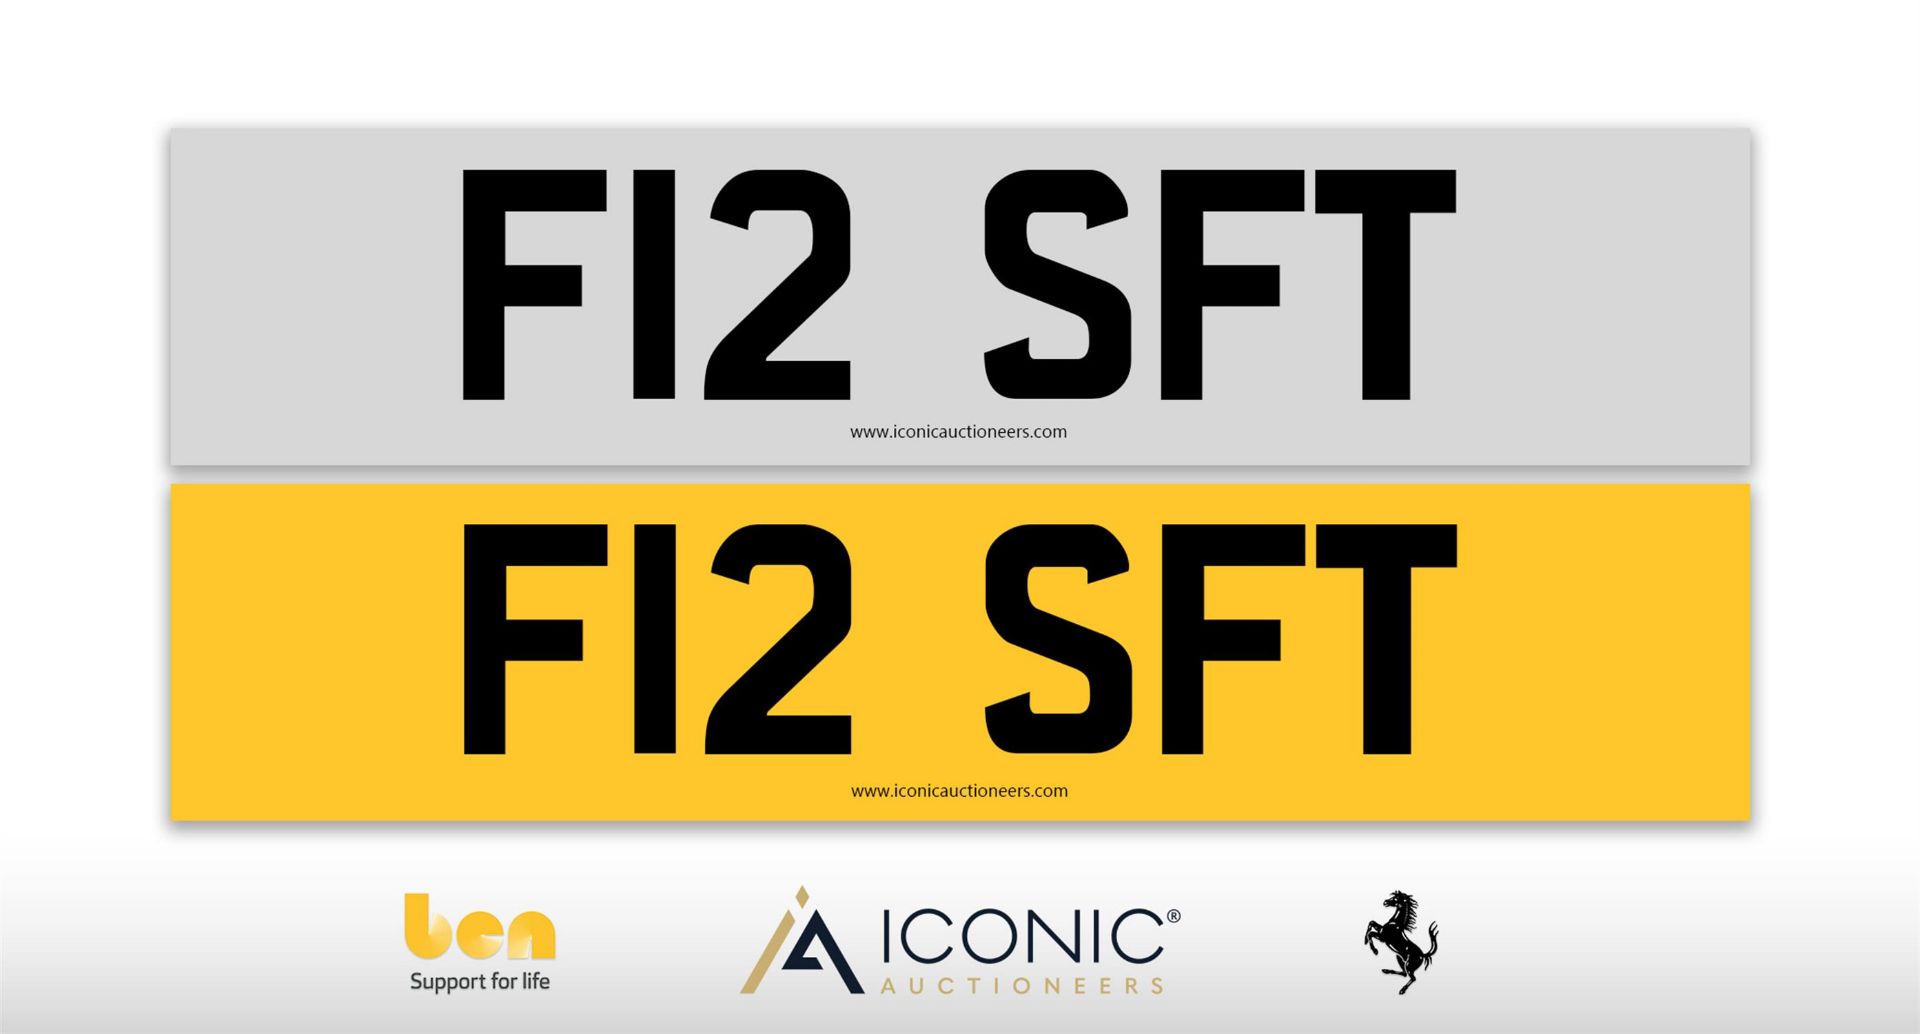 Registration Number F12 SFT